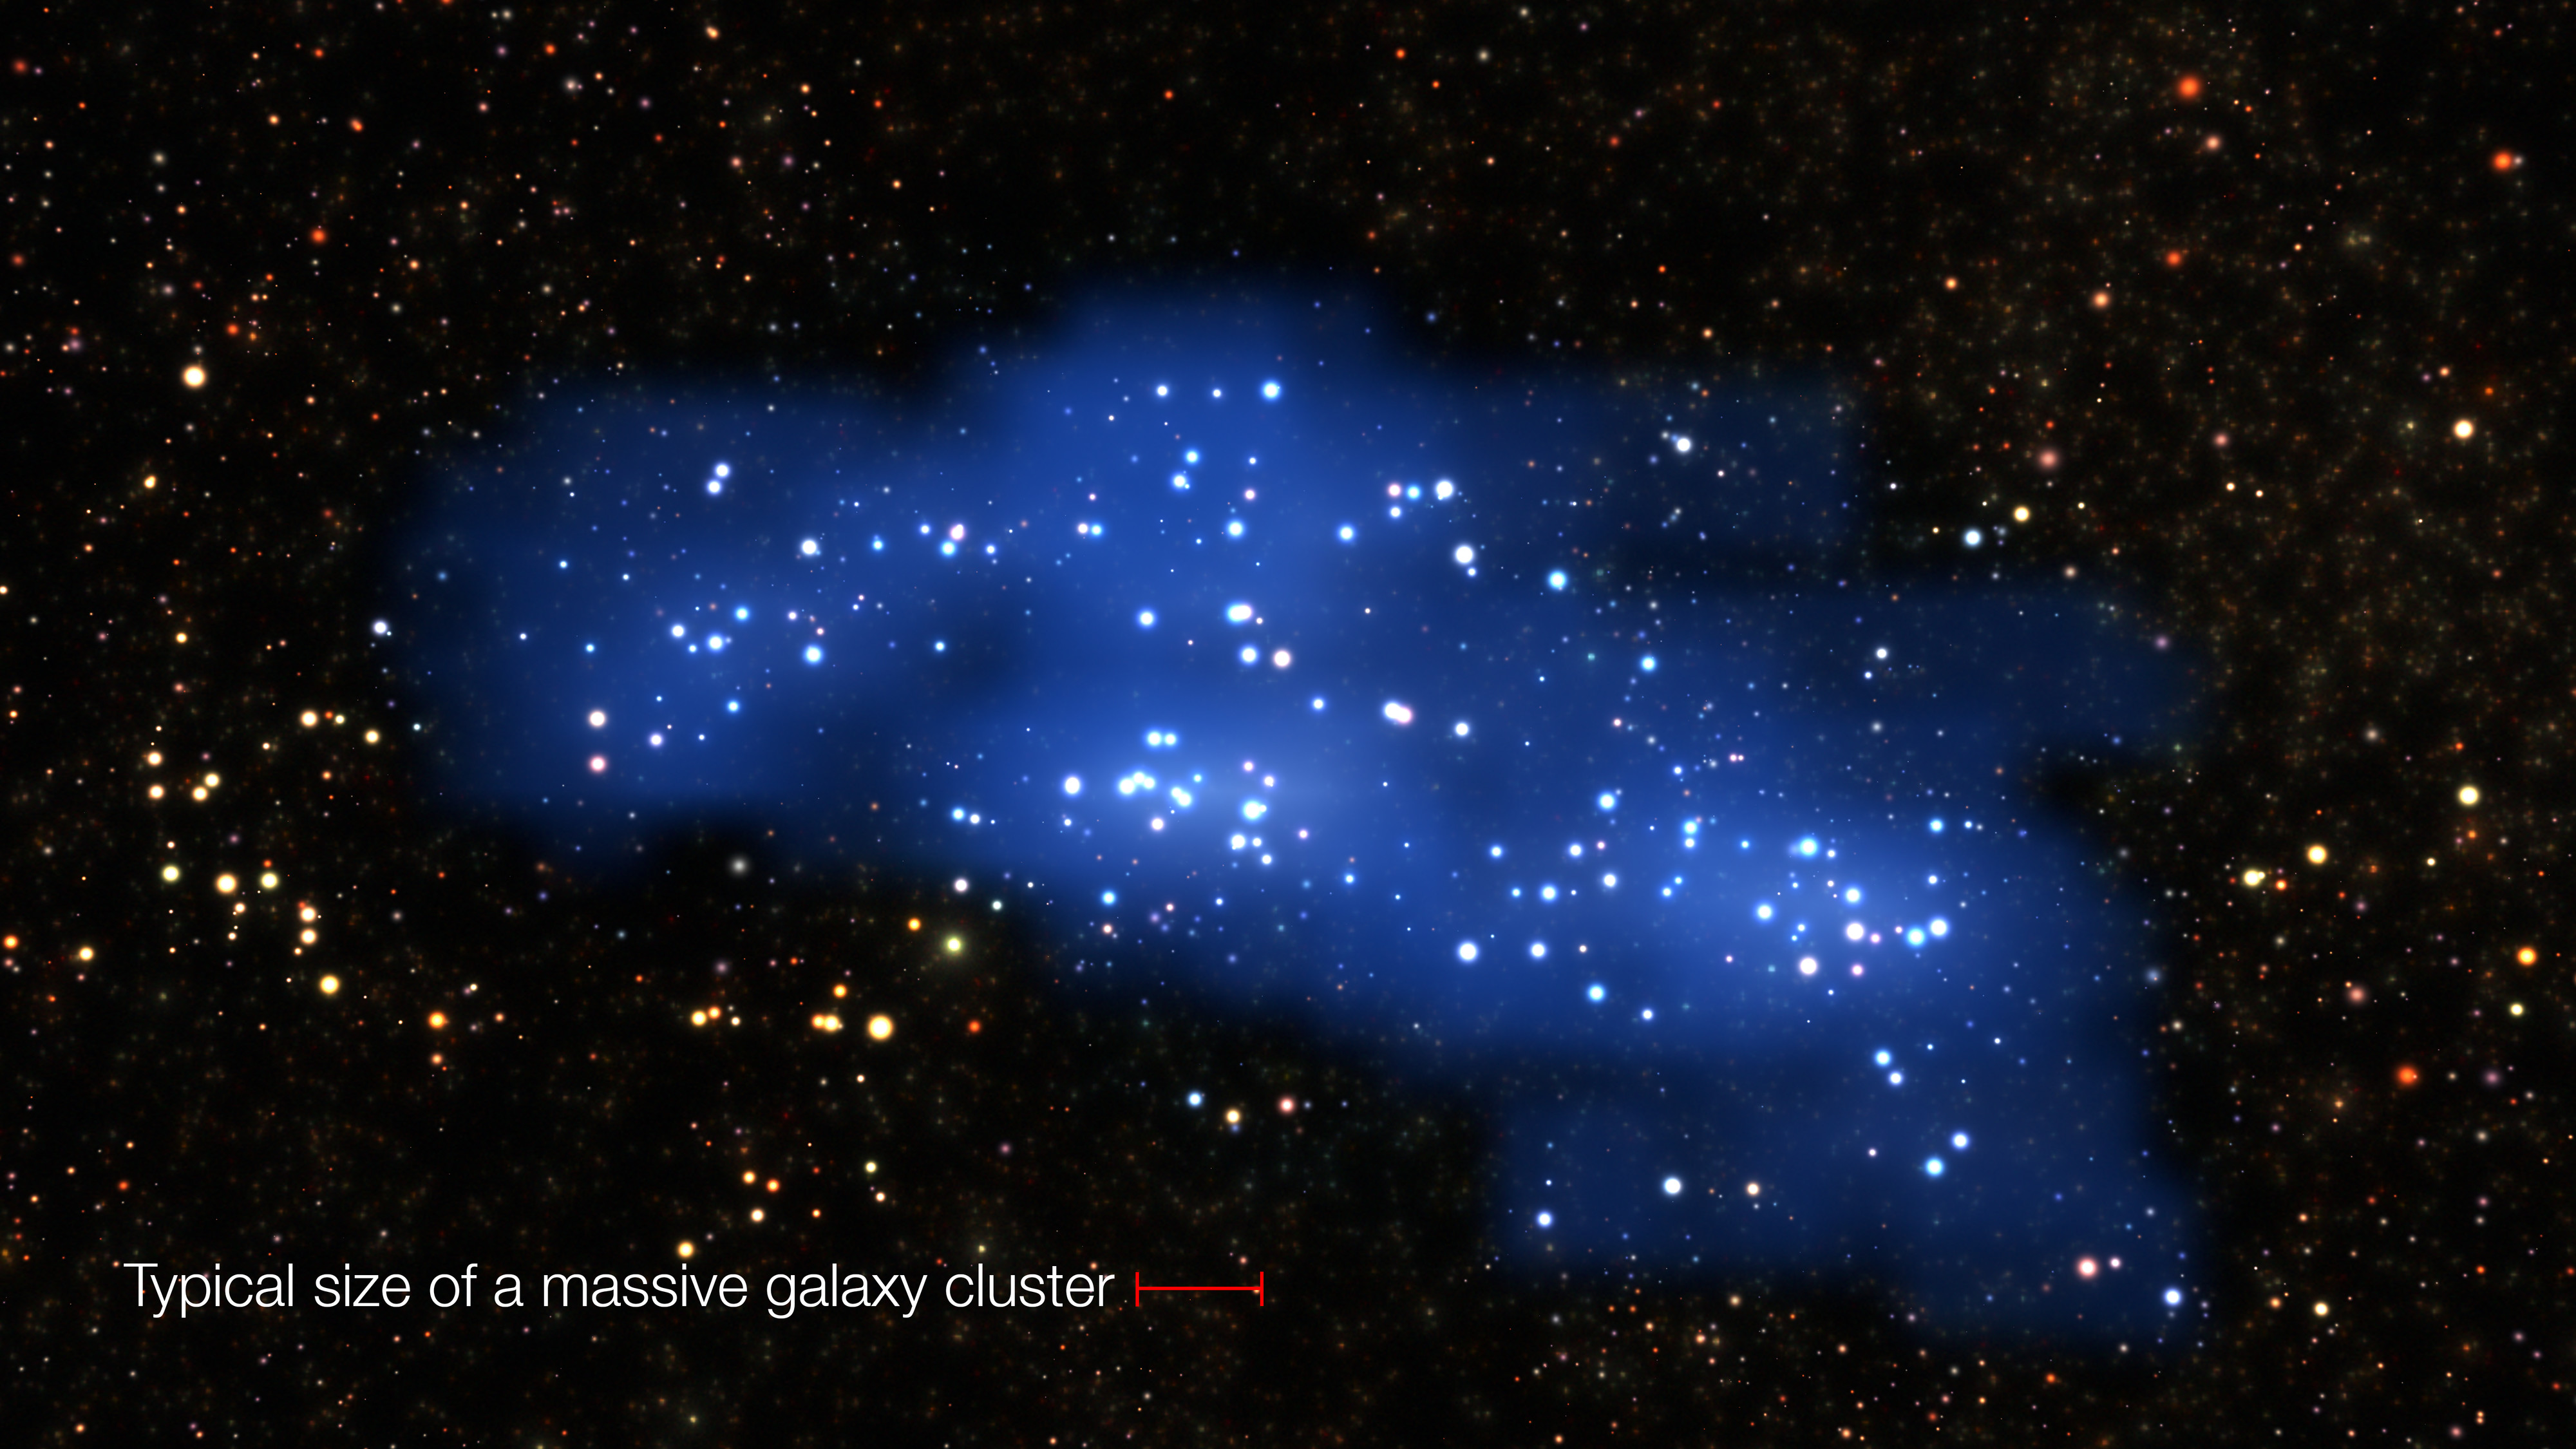 Extensión de Hyperion, comparada con el tamaño de un típico cúmulo de galaxias masivo en el universo local (línea roja). Crédito: ESO/L. Calçada & Olga Cucciati et al.